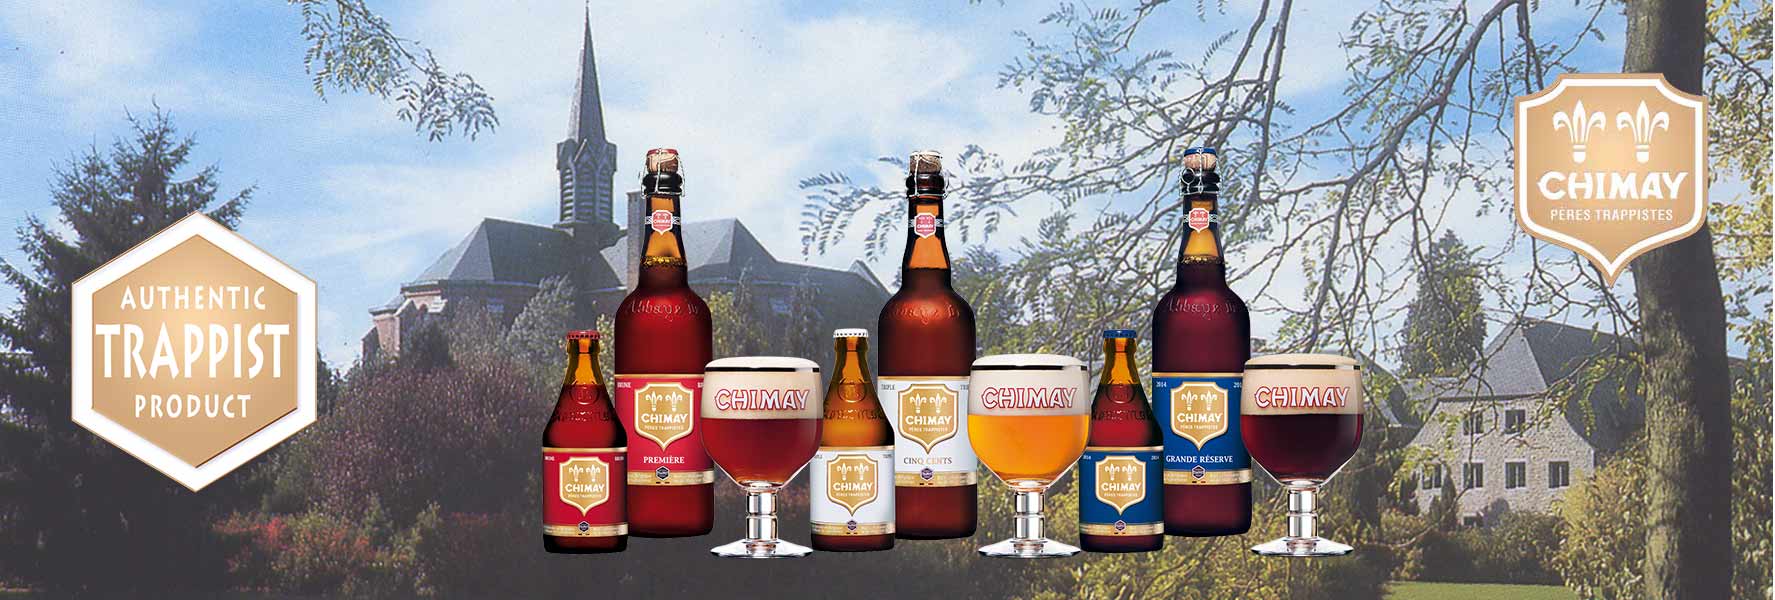 Trappisten Bier Chiemay aus dem Kloster kaufen